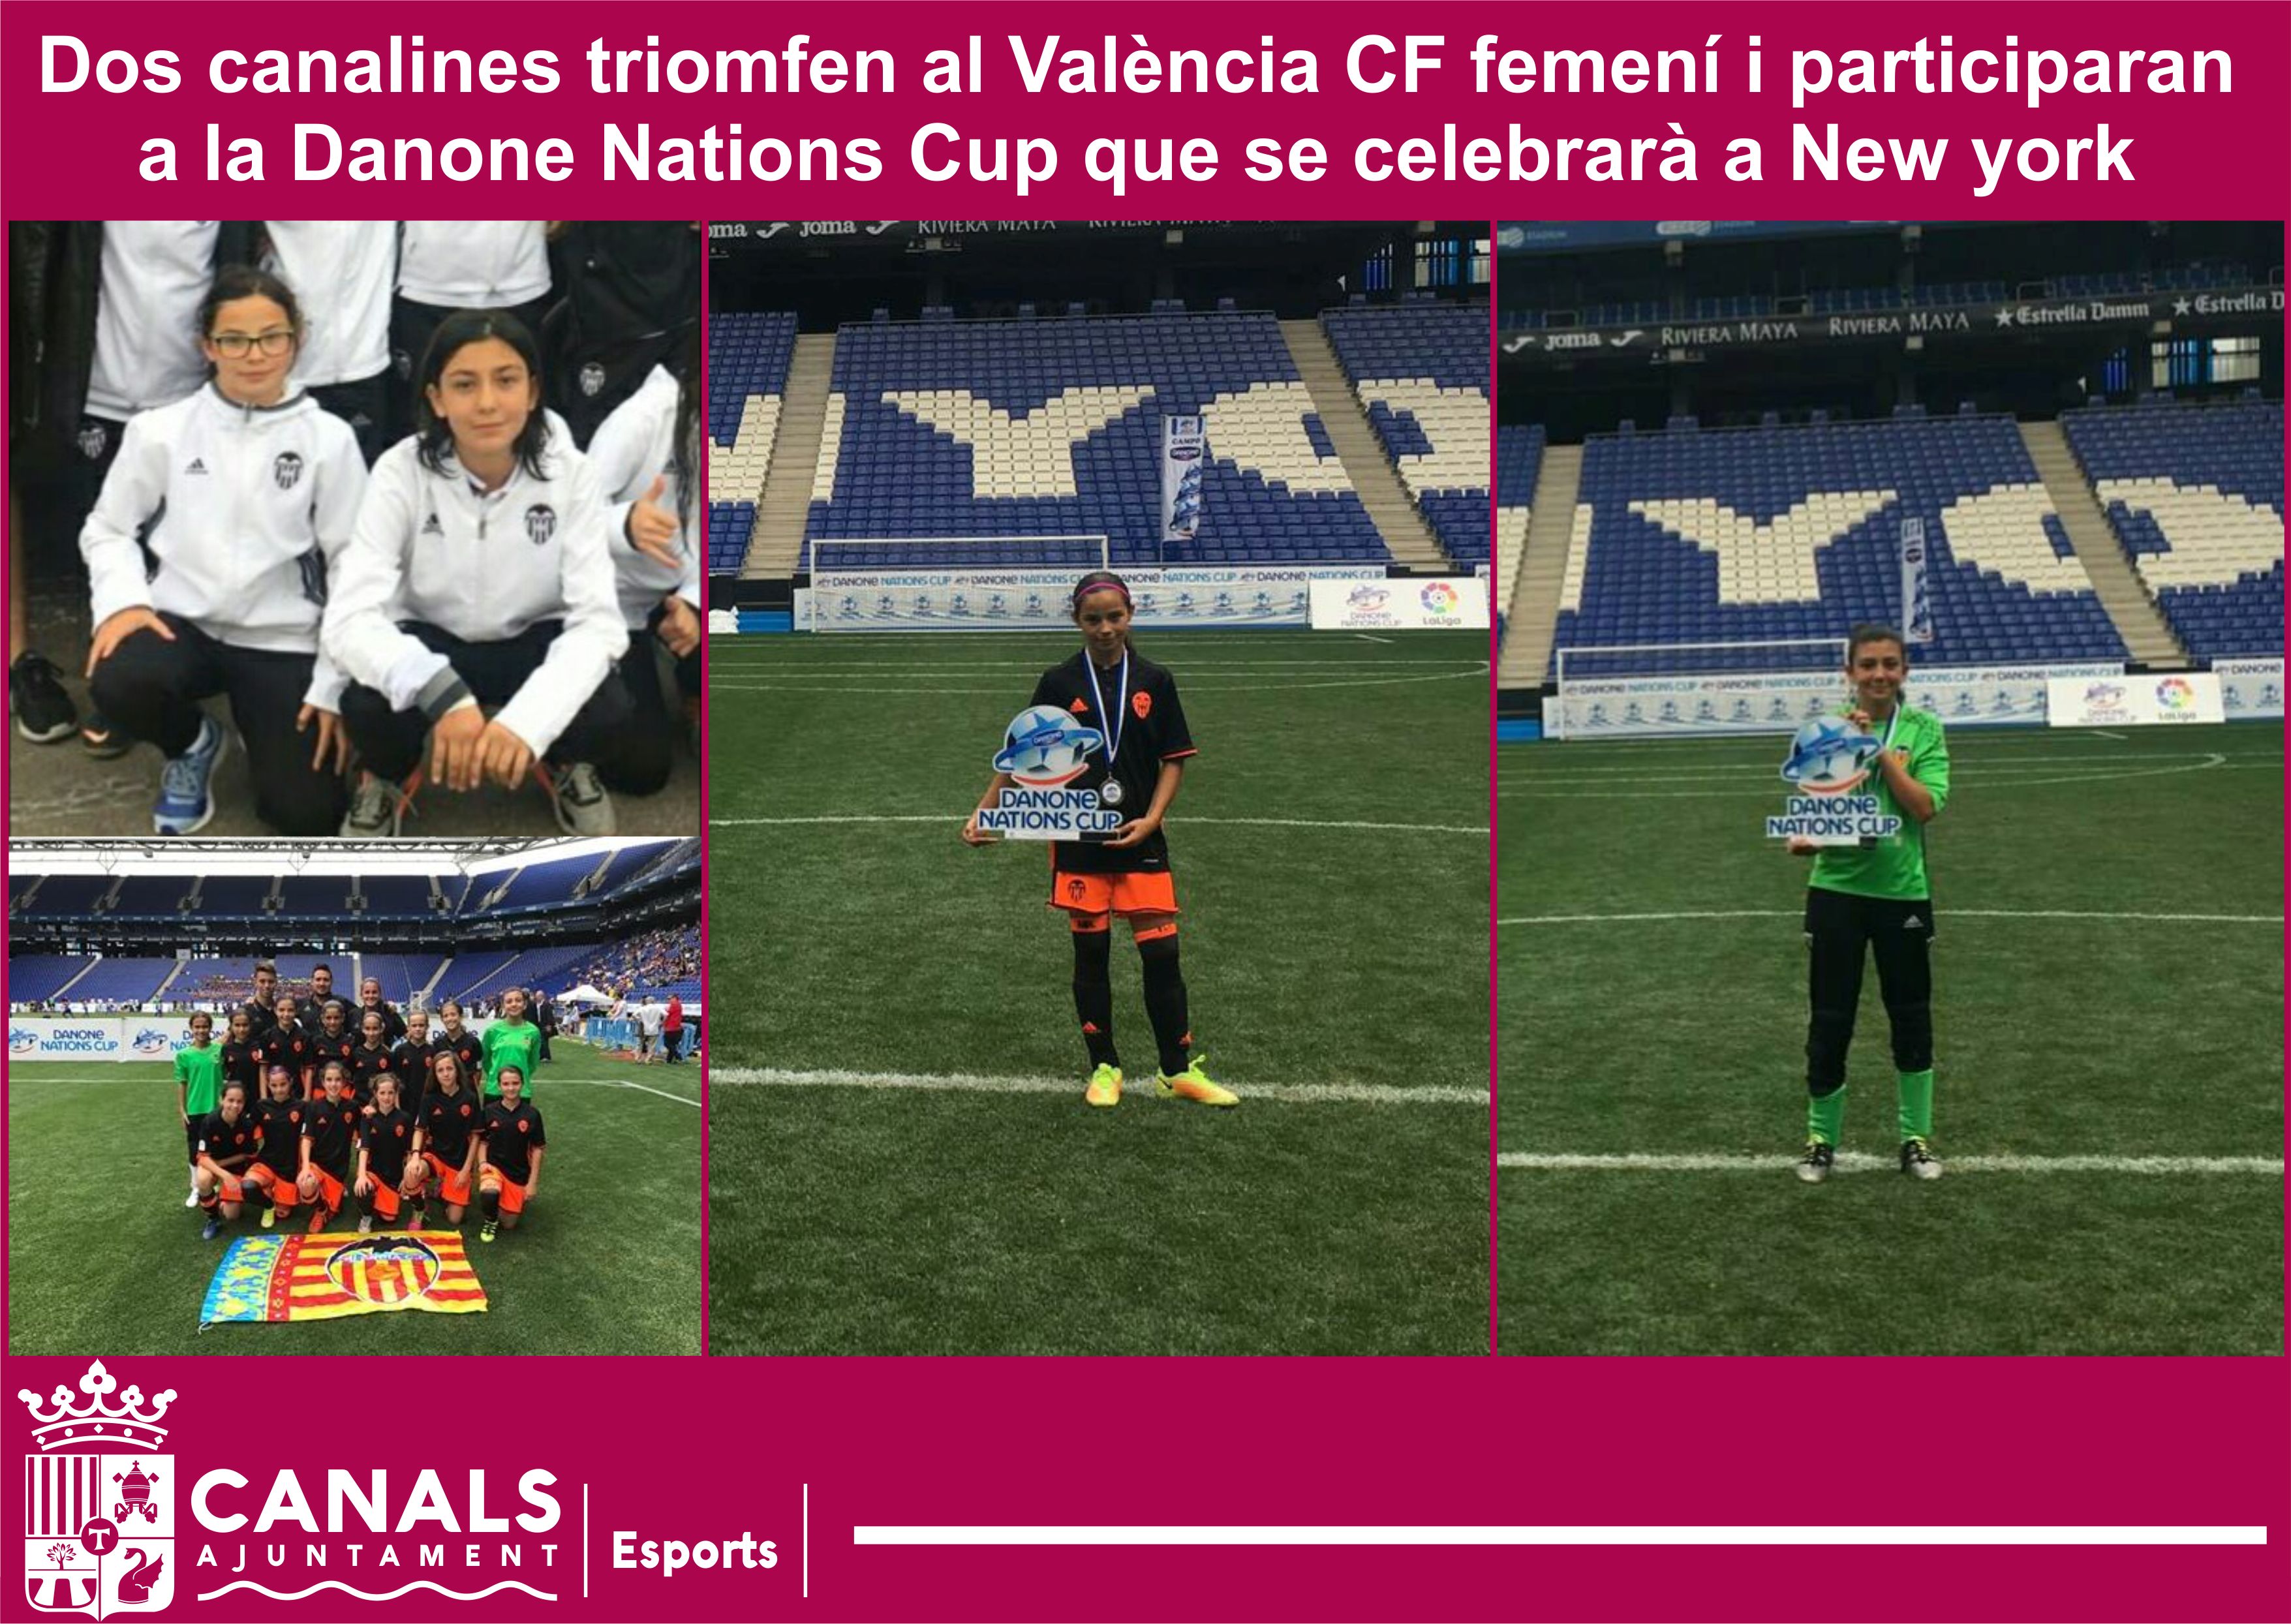 2017.06.07 Jugadores Valencia CF. Ajuntament de Canals